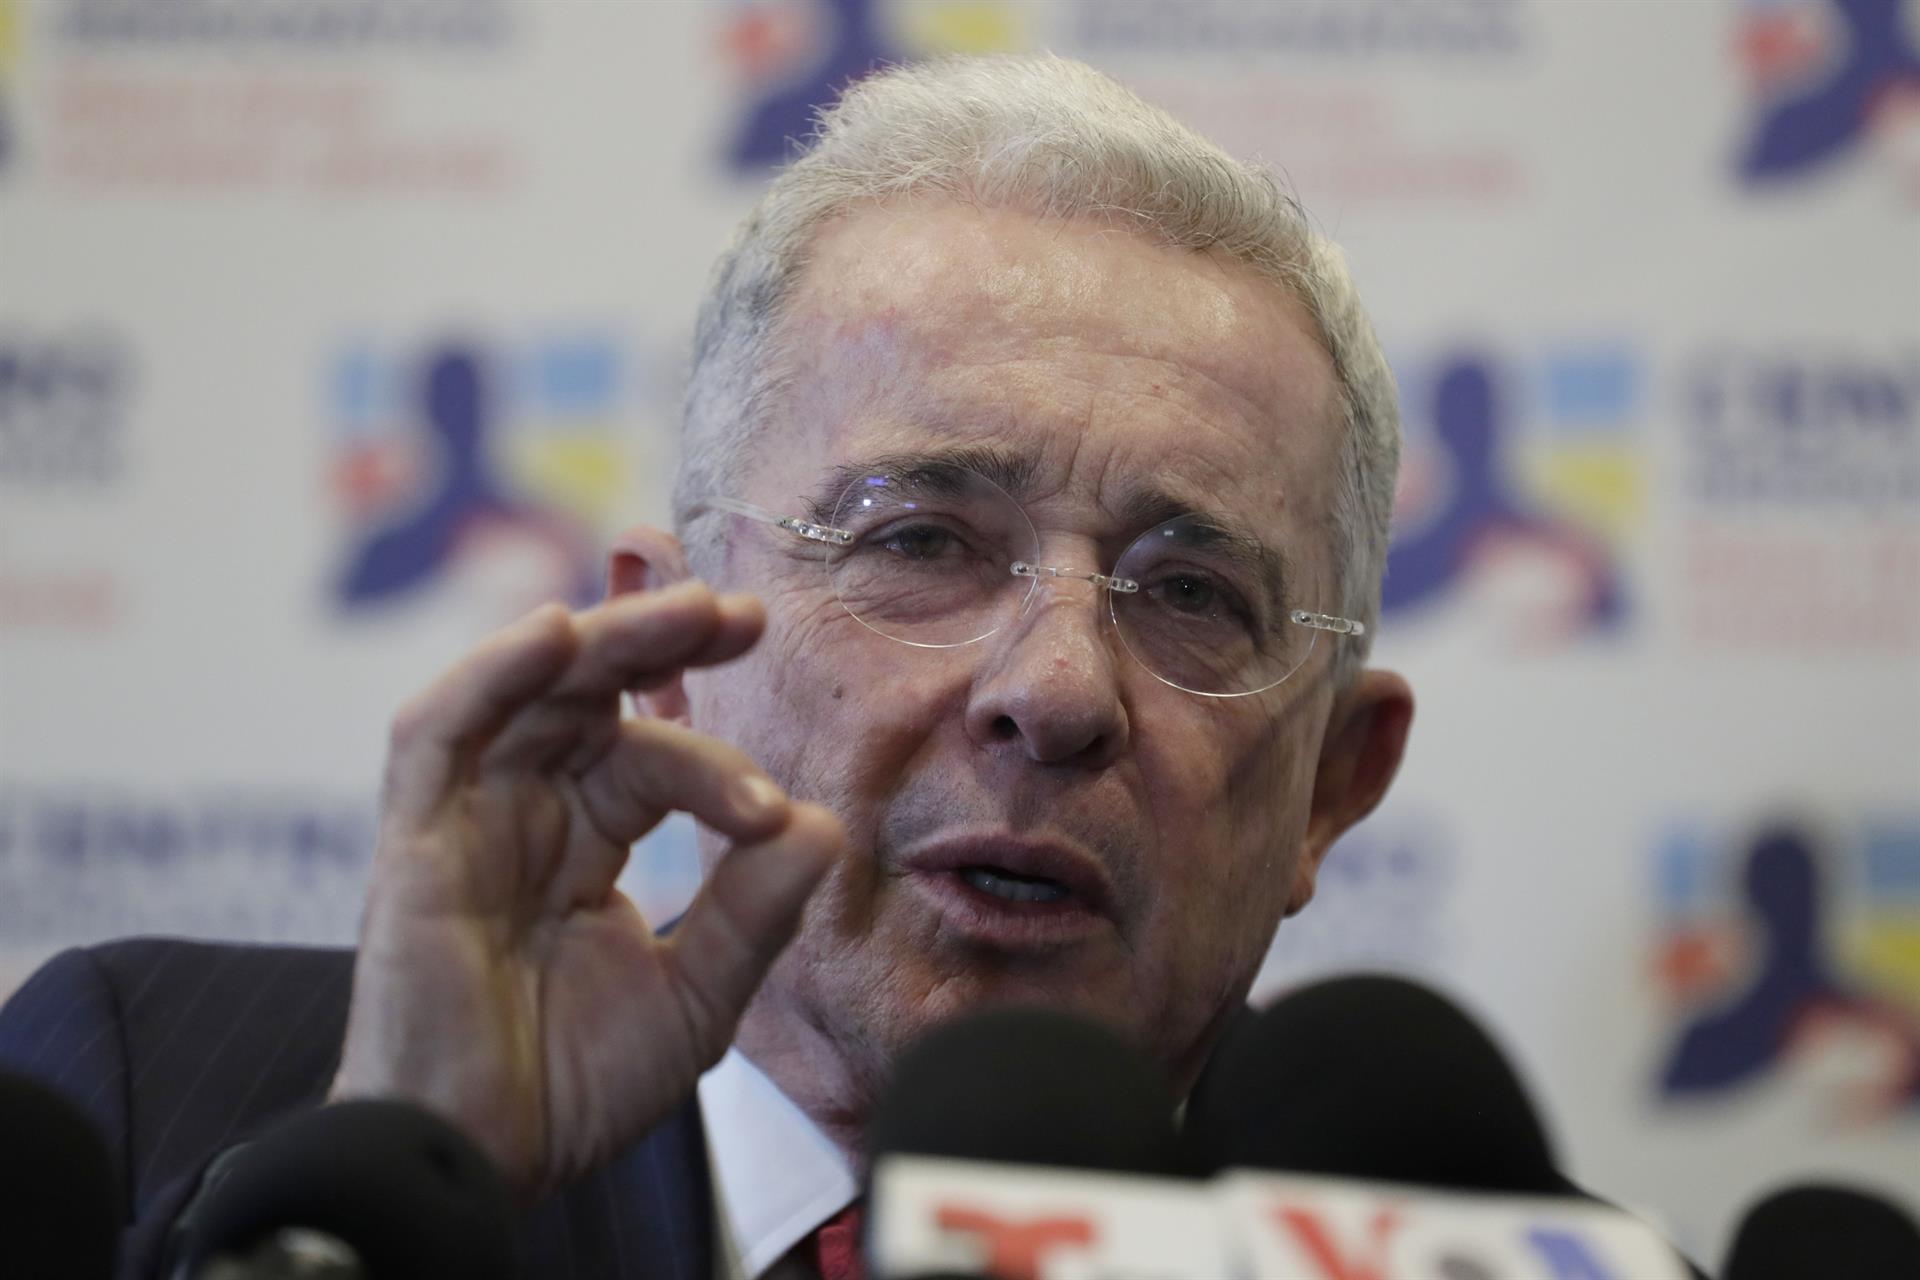 Renunció fiscal del caso contra Álvaro Uribe por presunto soborno a testigos